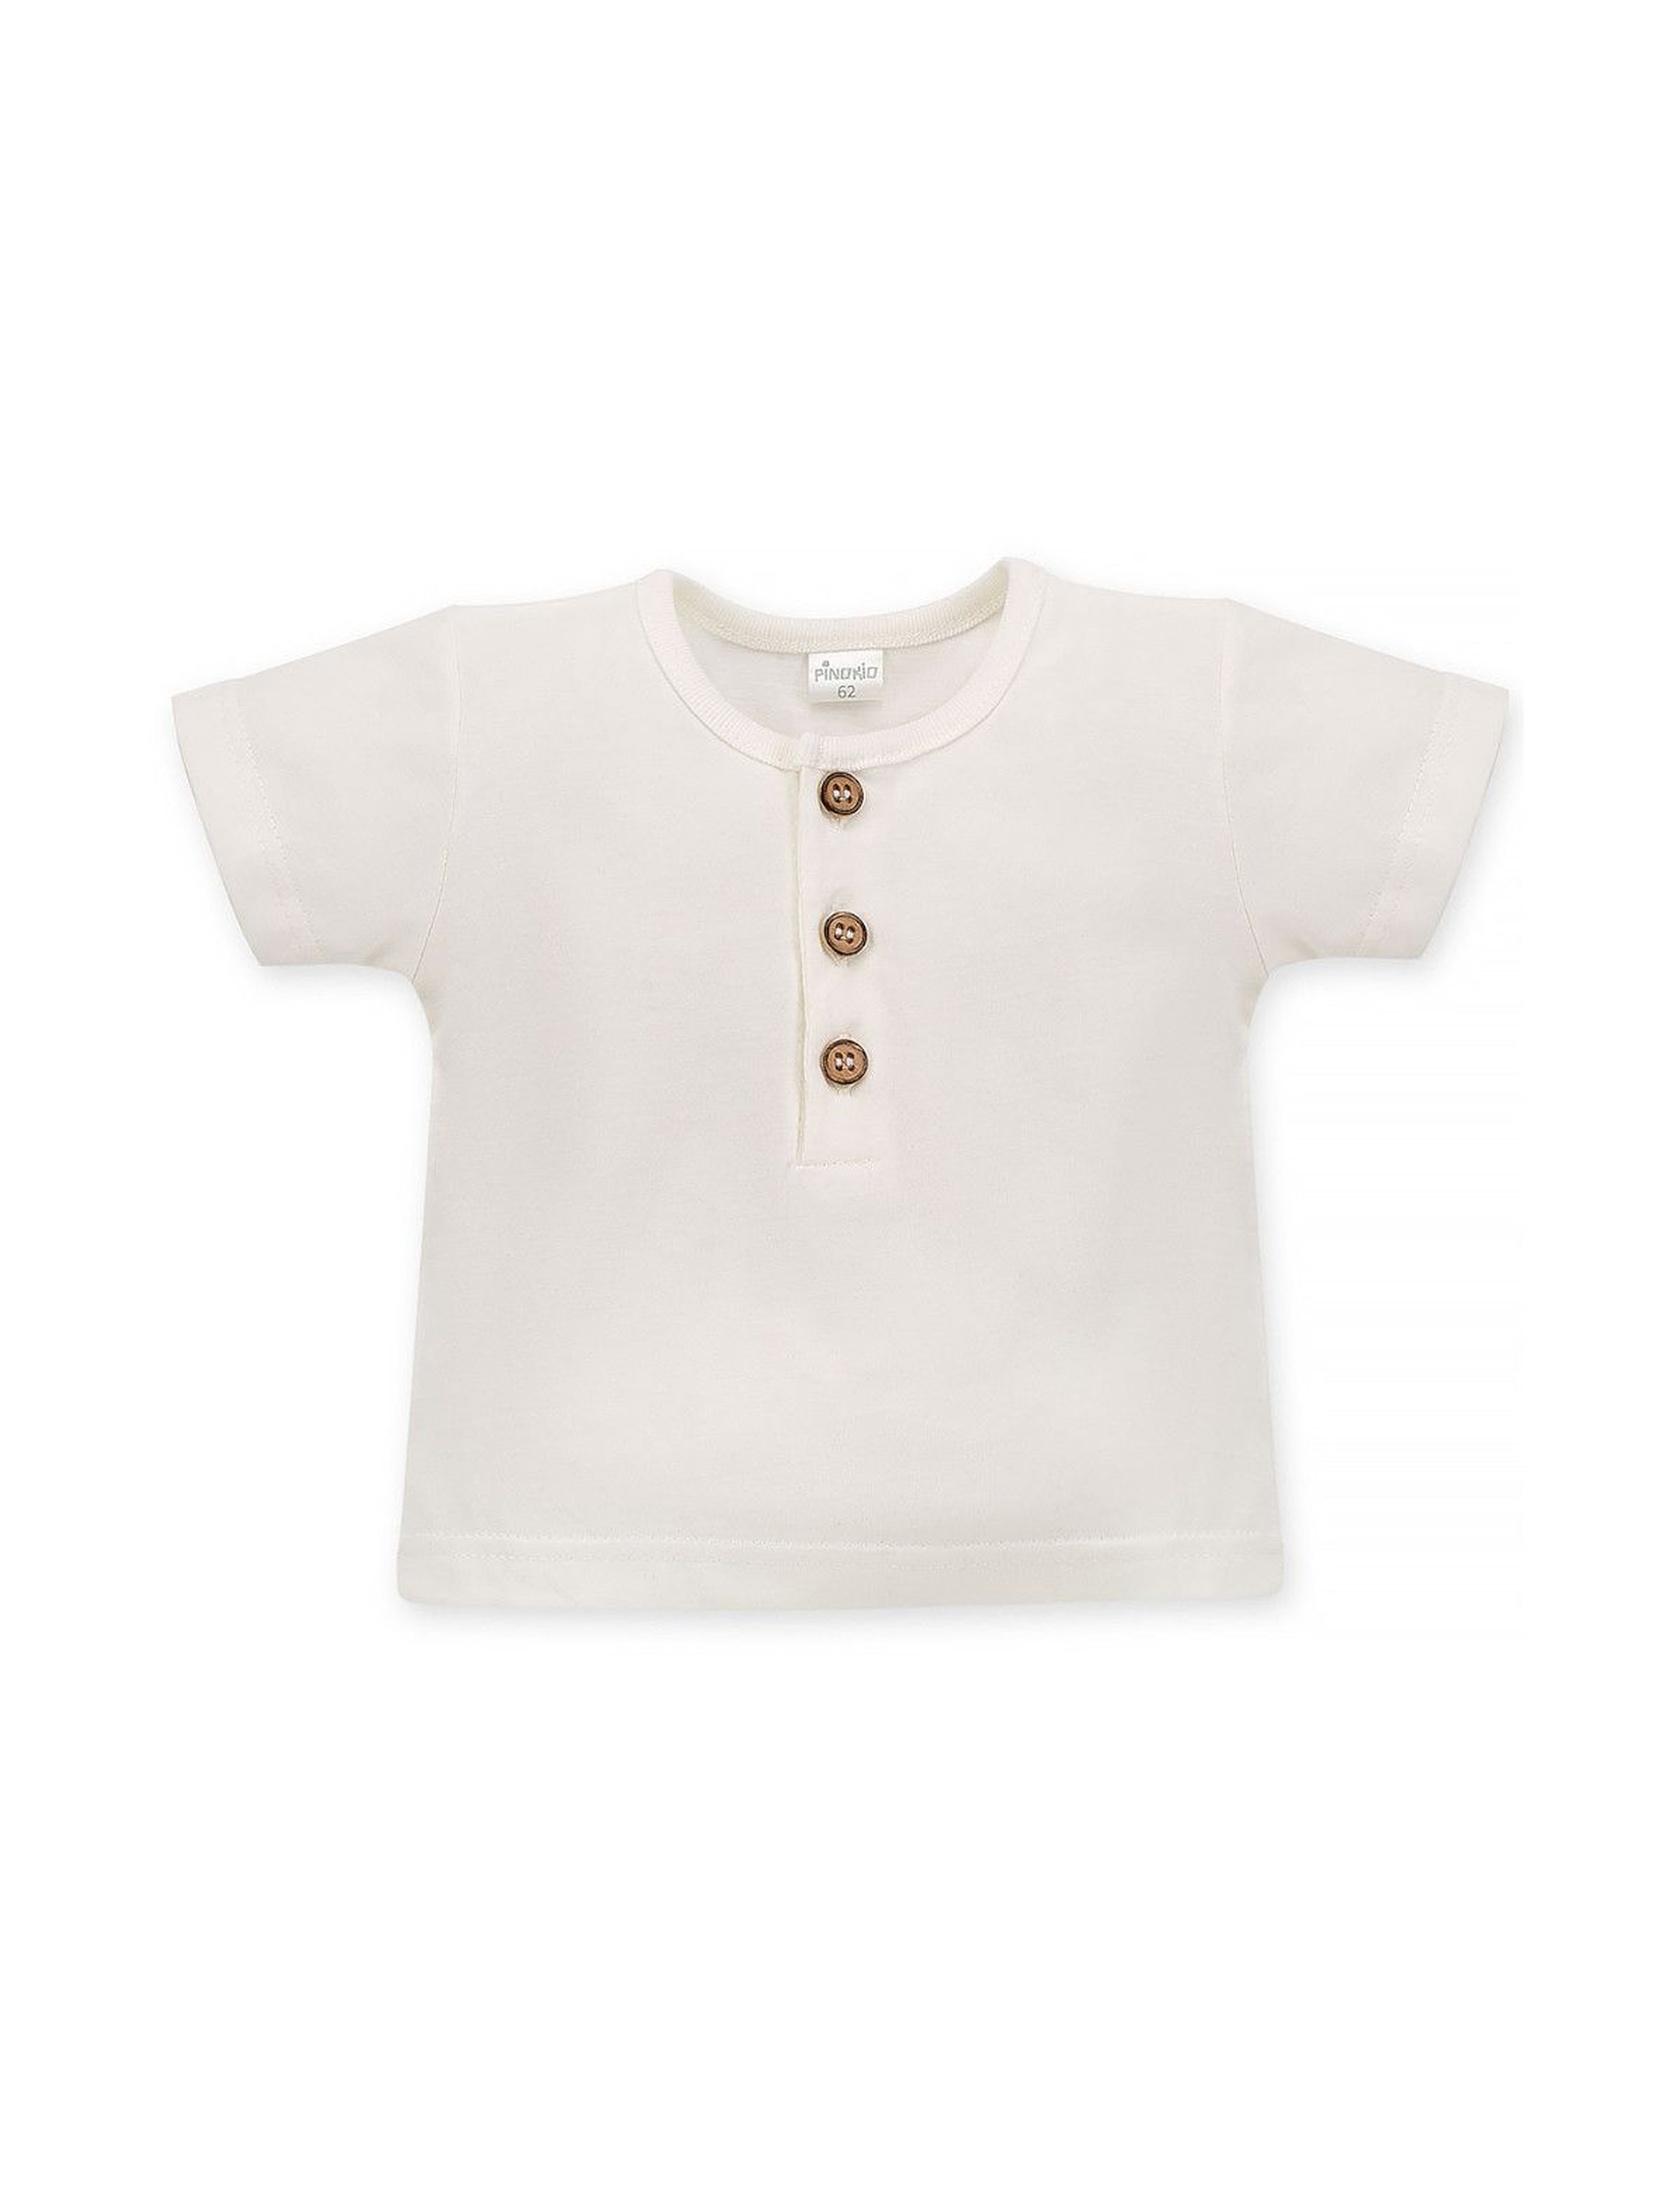 Bawełniana bluzka chłopięca z krótkim rękawem ecru